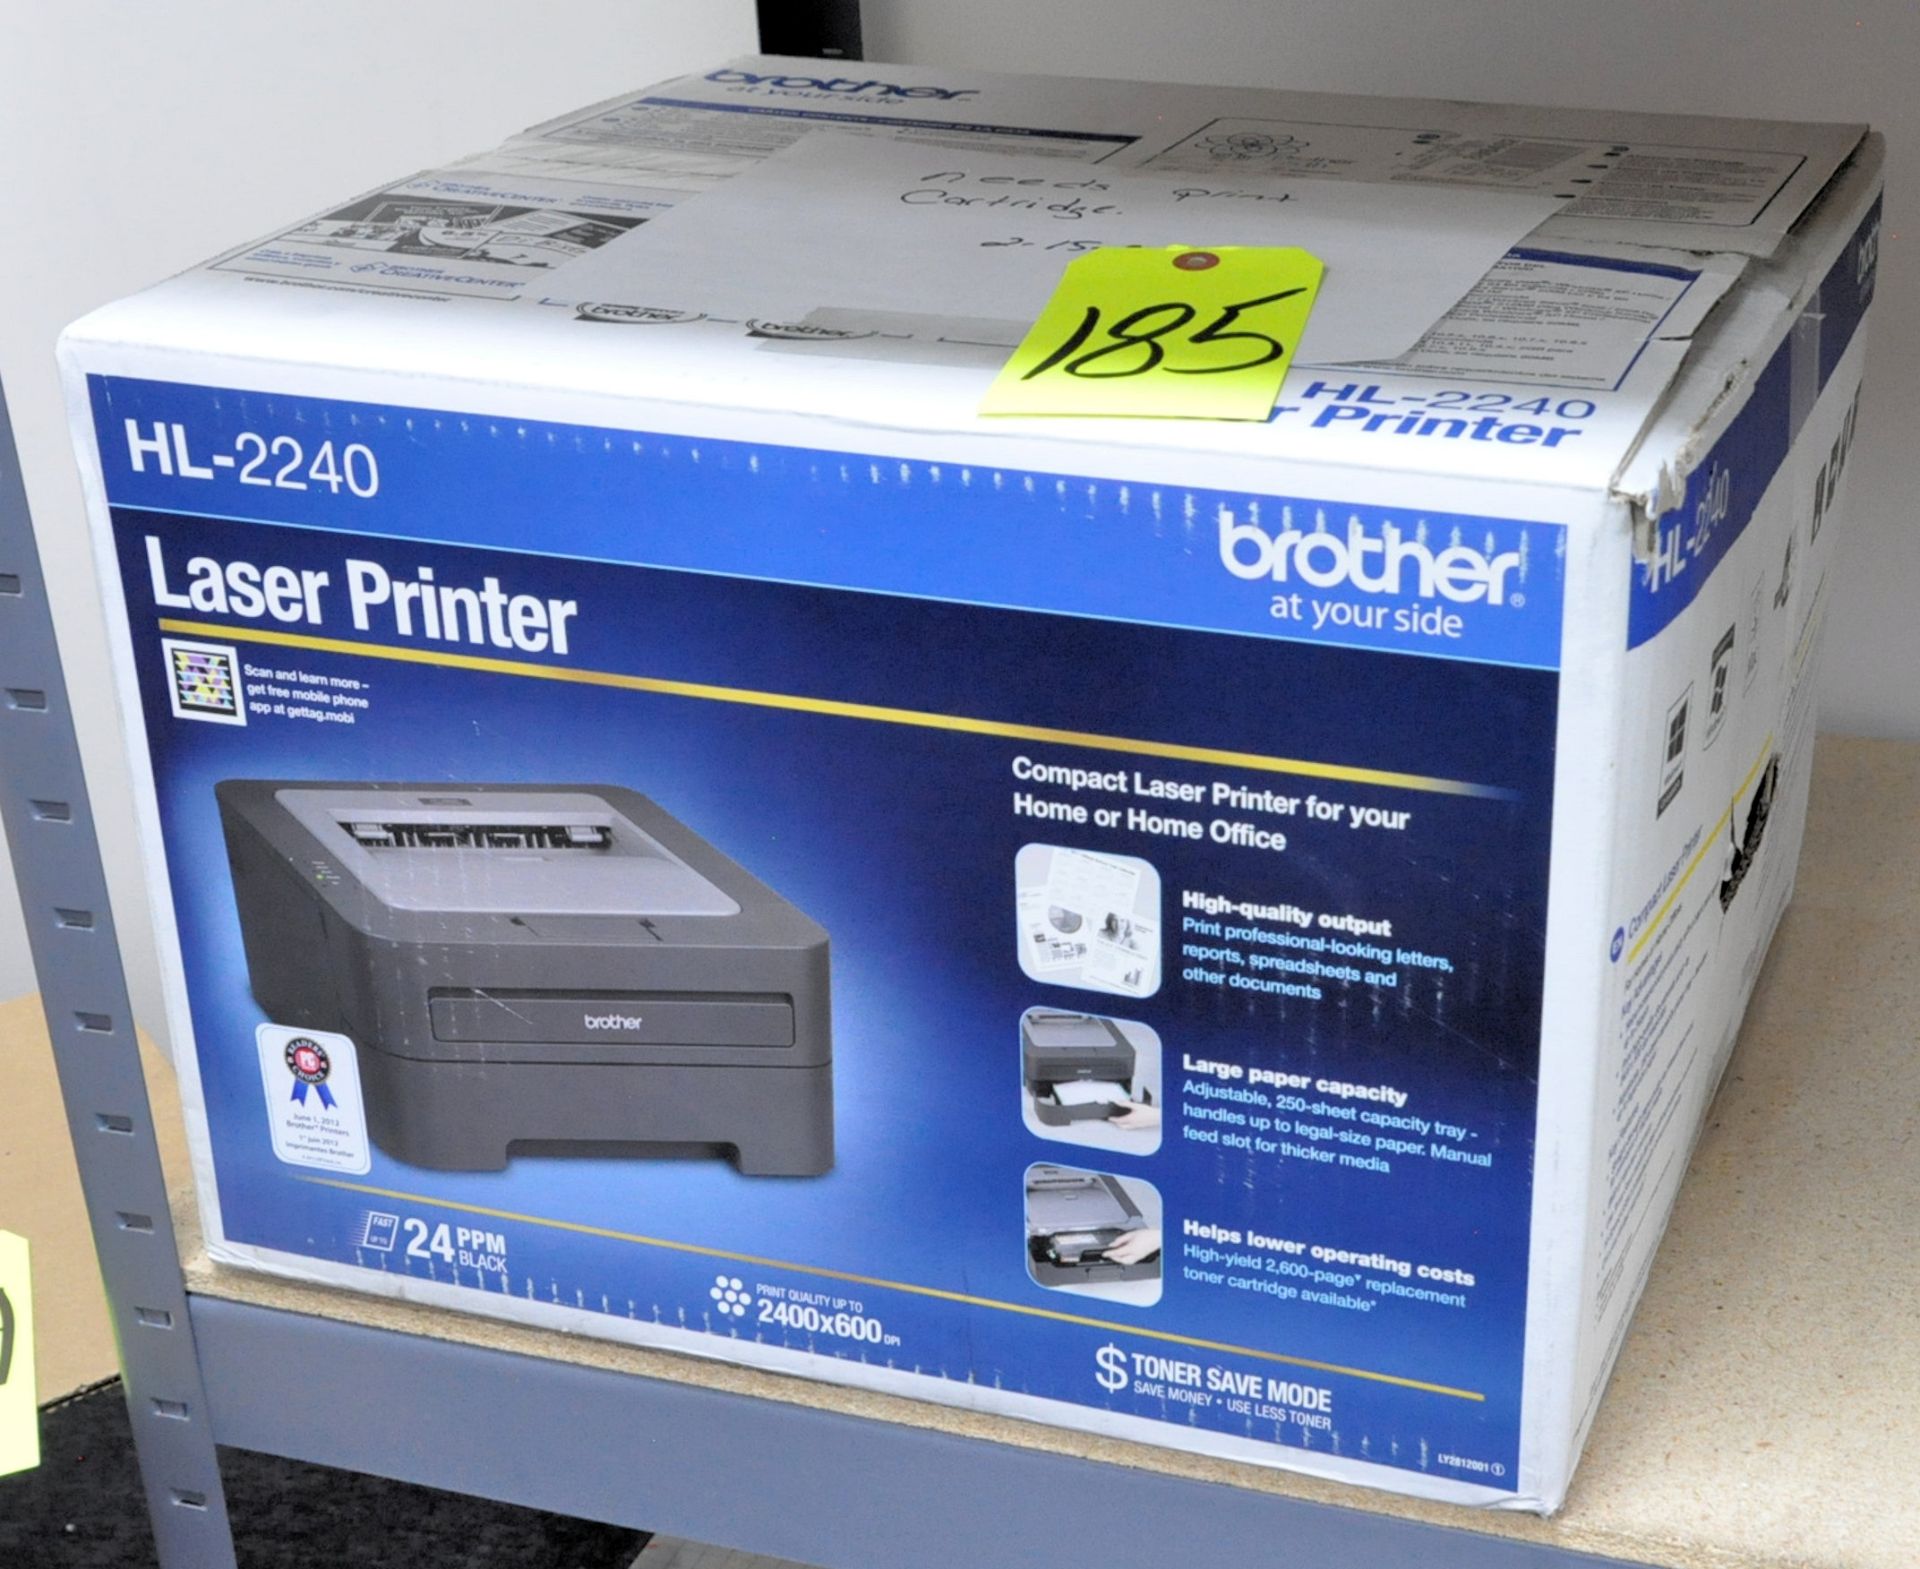 Brother HL-2240 Laser Printer in Box